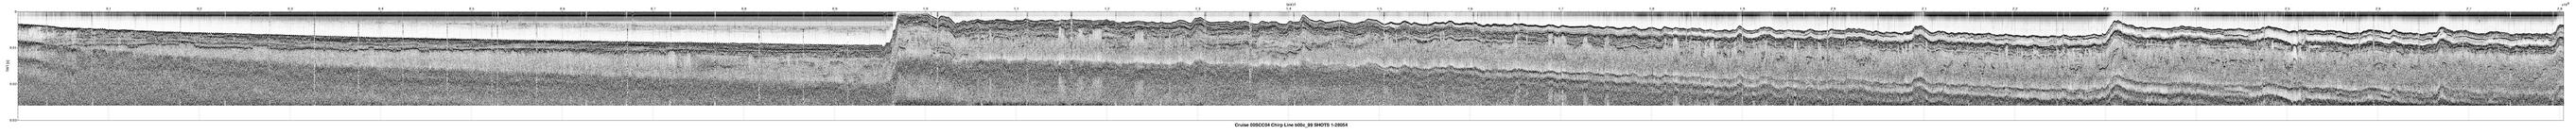 00SCC04 b00c_99 seismic profile image